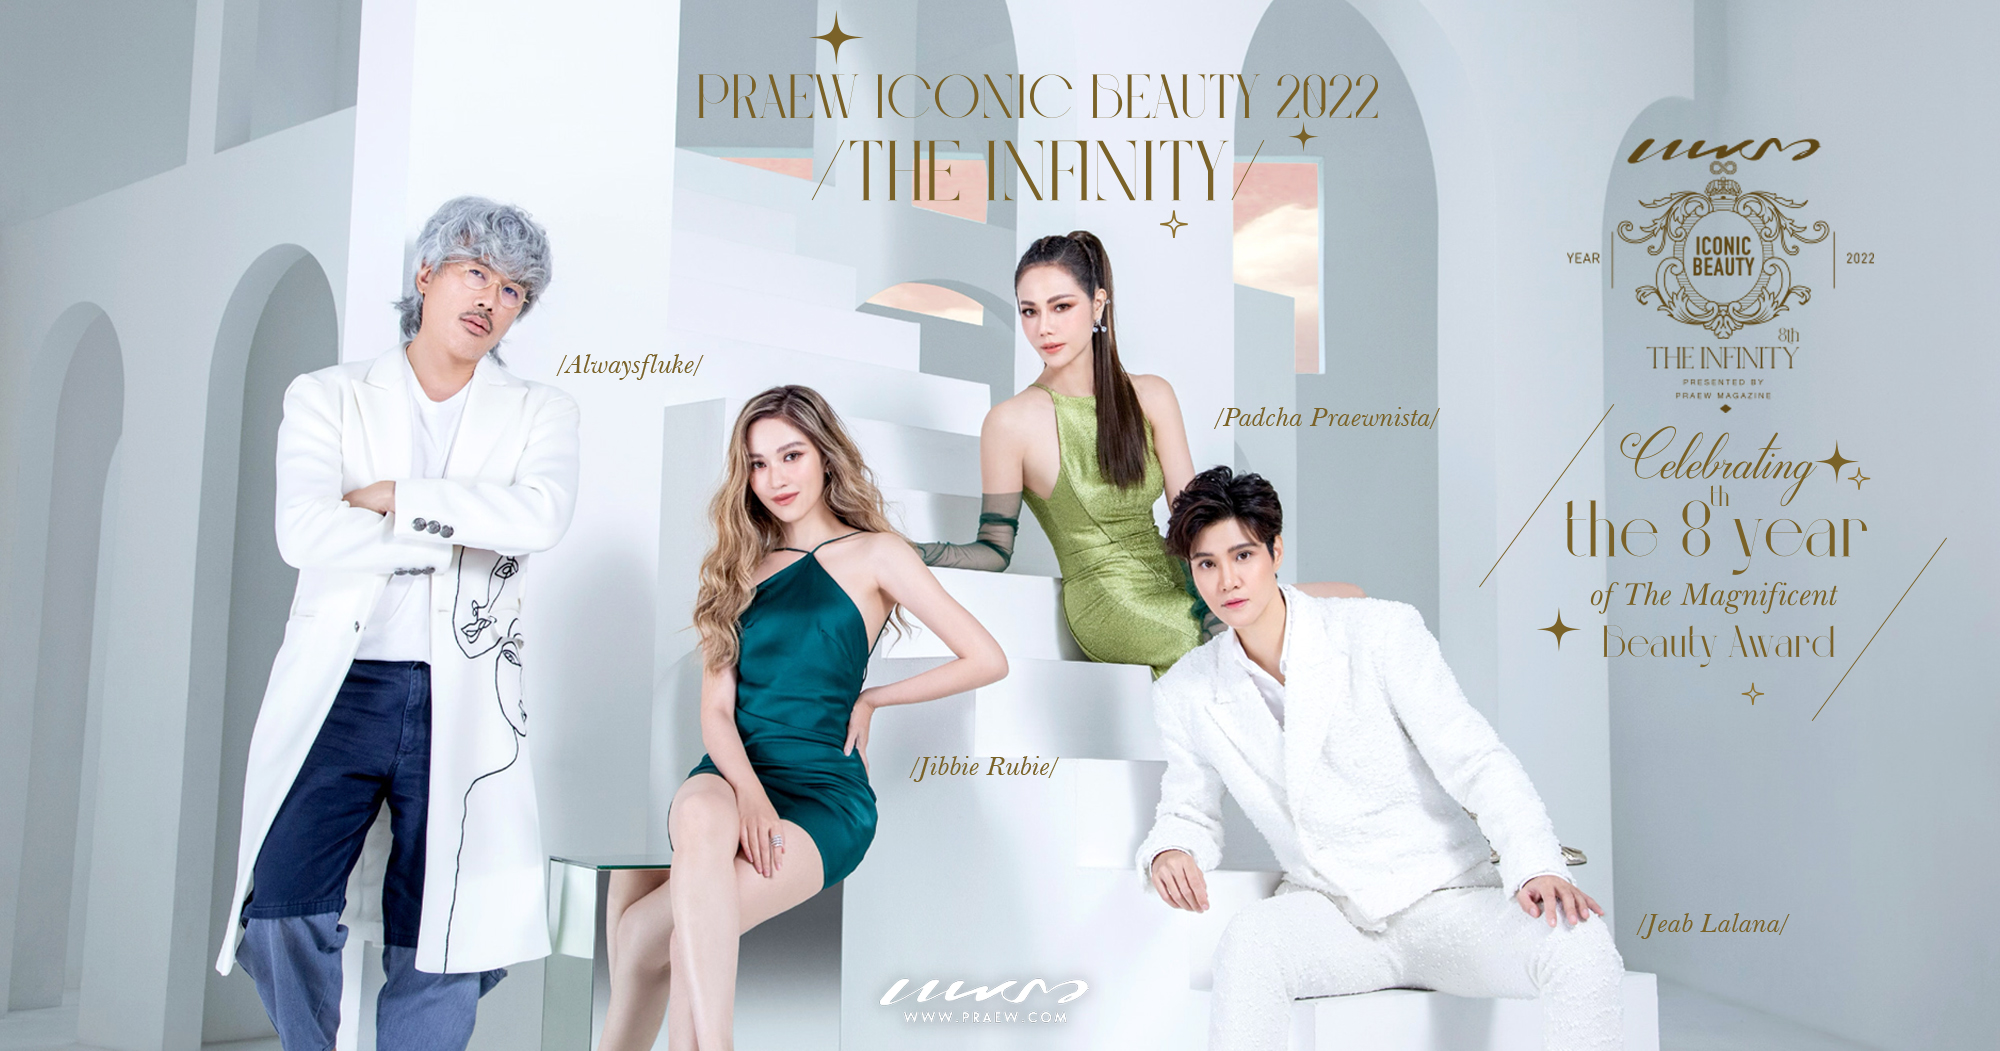 PRAEW Iconic Beauty 2022